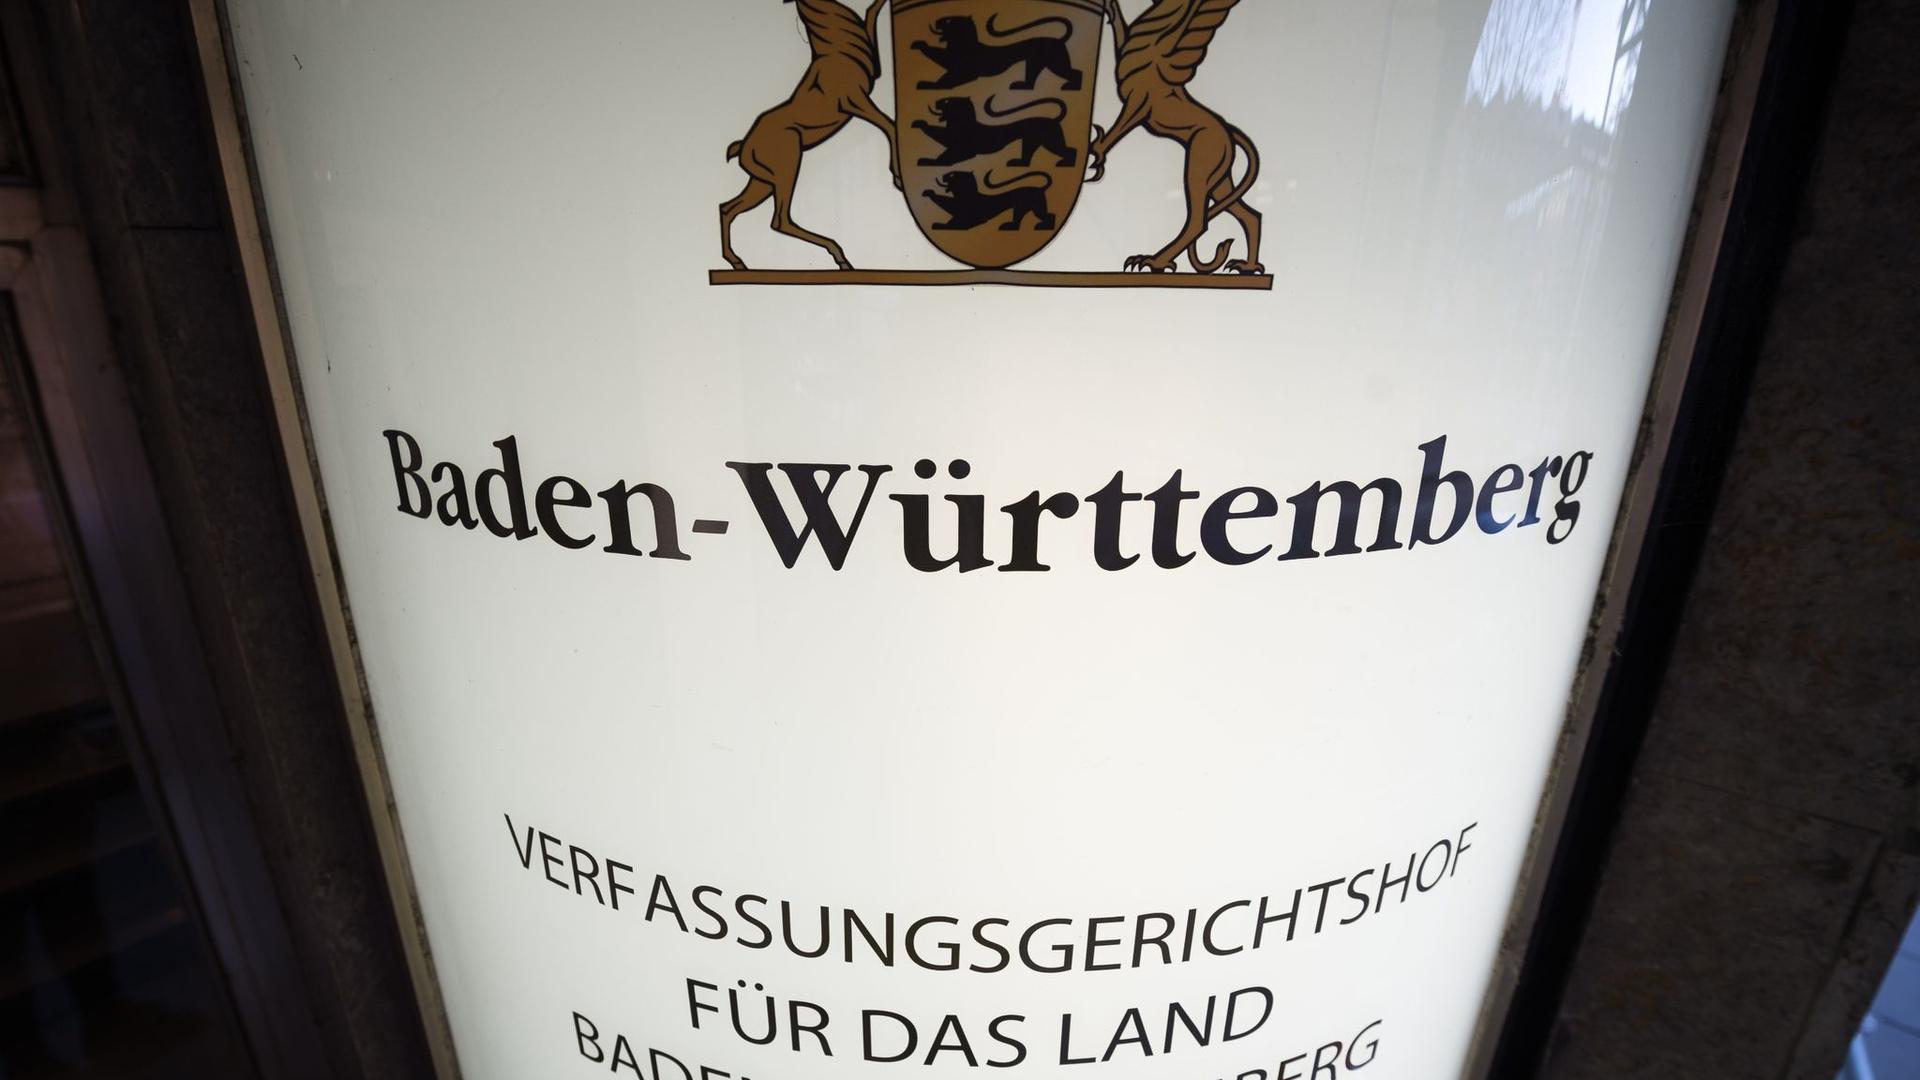 Das Schild des Verfassungsgerichtshofes für das Land Baden-Württemberg.